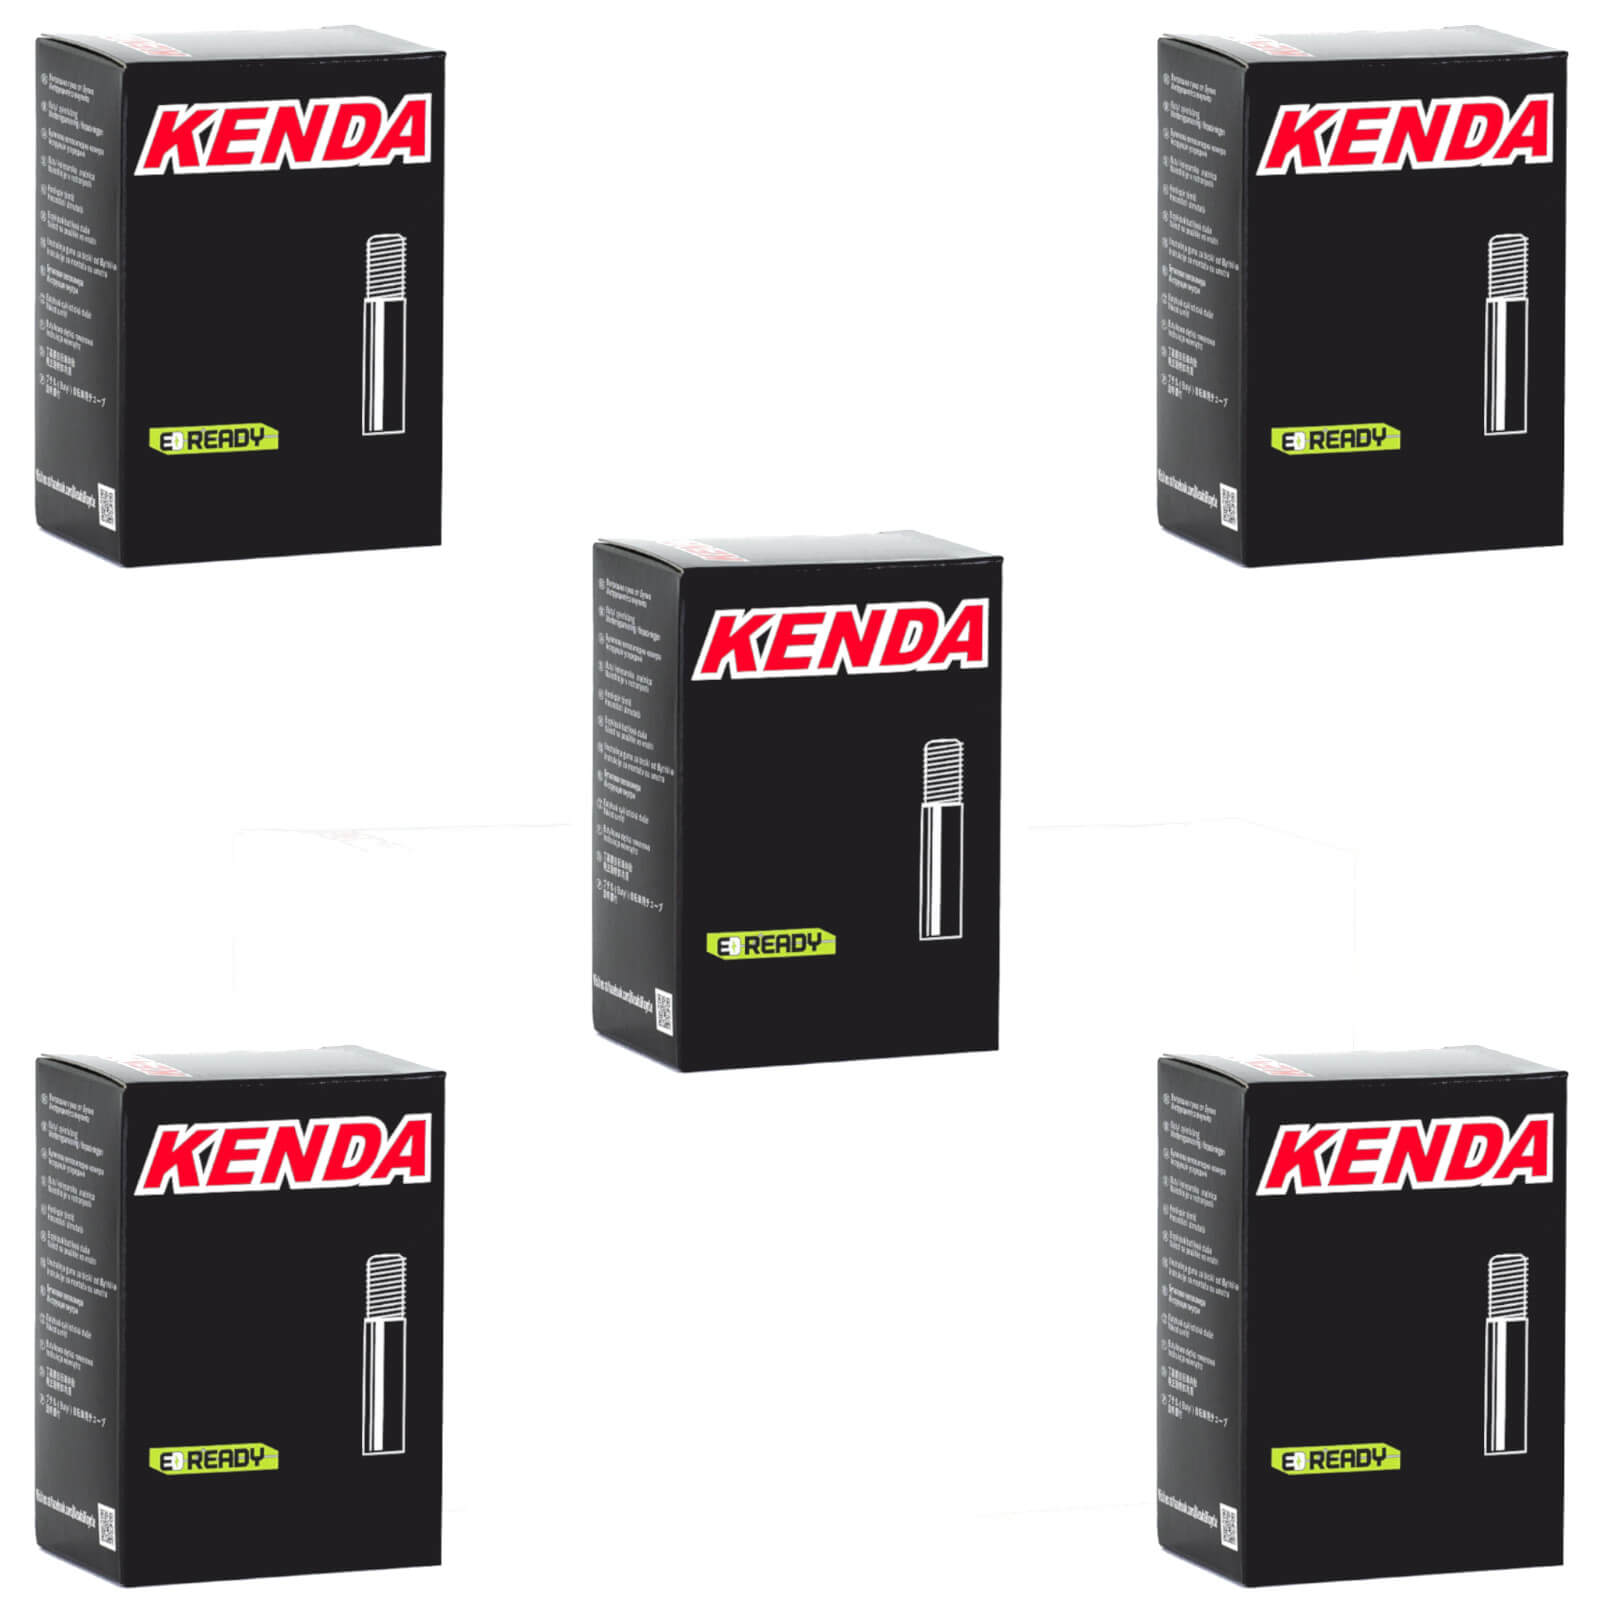 Kenda 27.5x2.4-2.8" 27.5 Inch Schrader Valve Bike Inner Tube Pack of 5